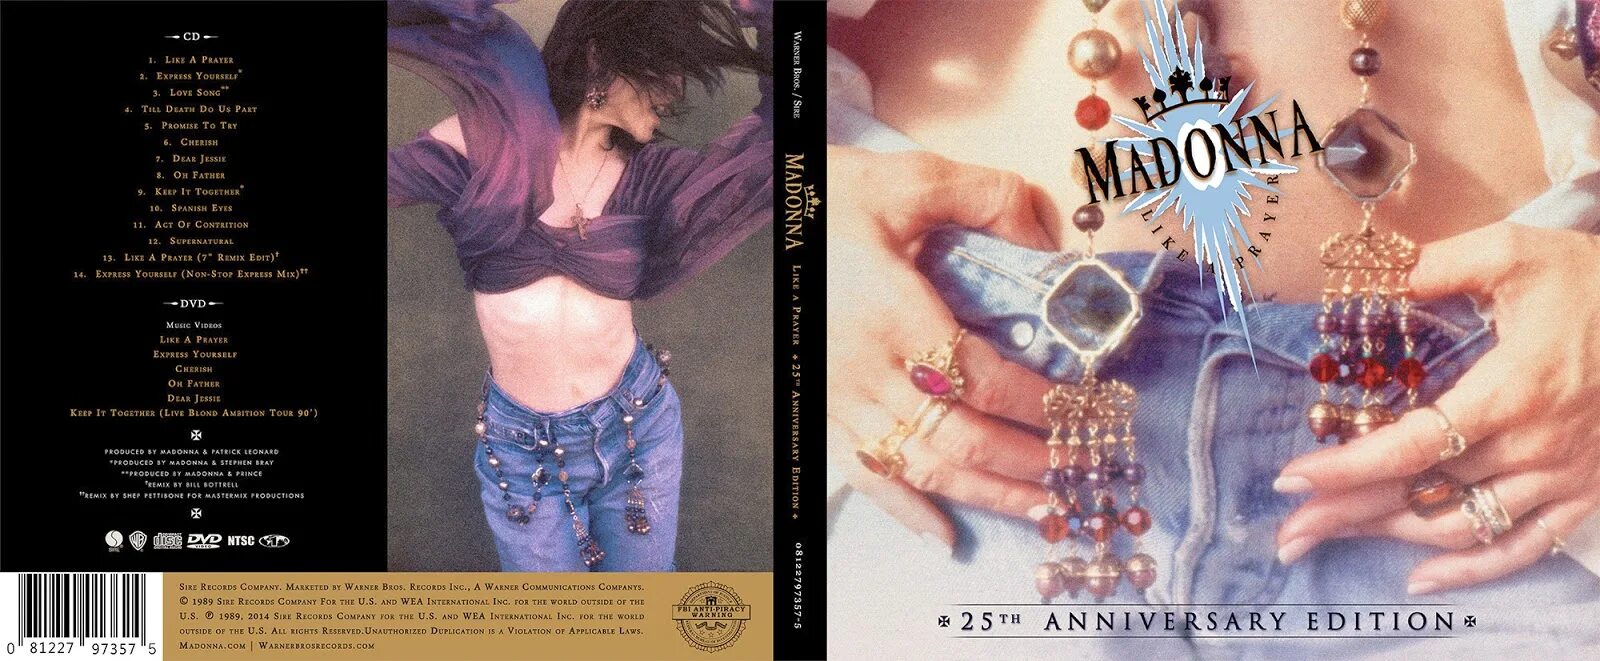 Like madonna песня. Madonna like a Prayer обложка. CD Madonna: like a Prayer. Мадонна 1989 обложка. Madonna 1989 like a Prayer.